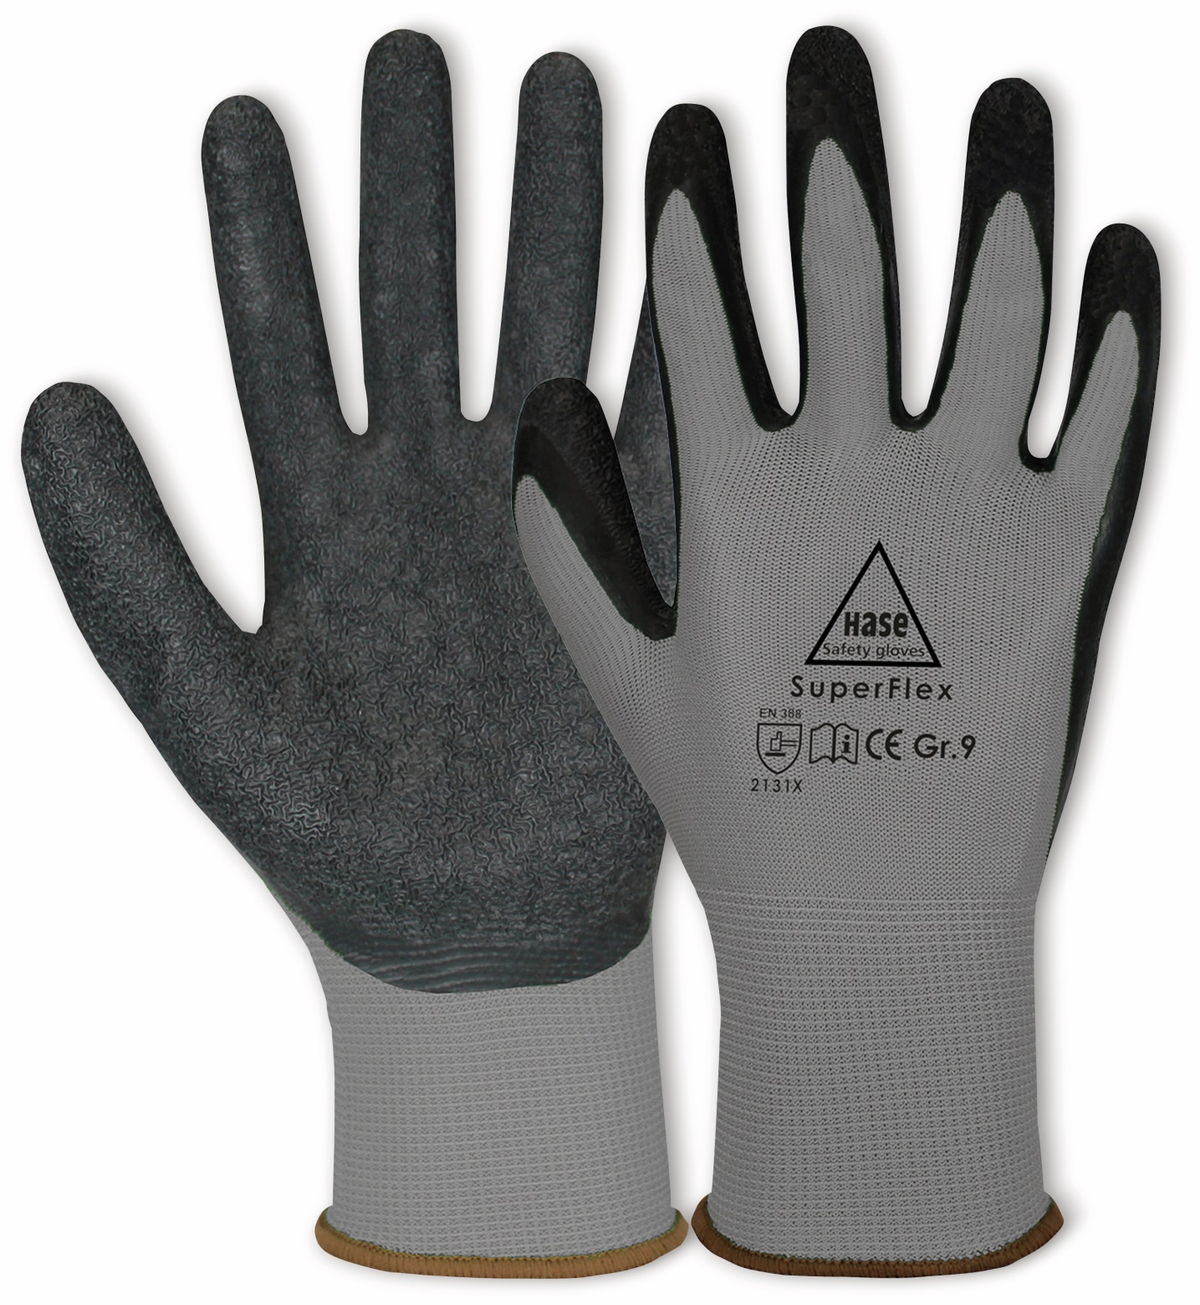 HASE SAFETY GLOVES Latex-Arbeitshandschuhe Superflex, EN 388, EN 420, Größe 8, grau/schwarz von Hase Safety gloves